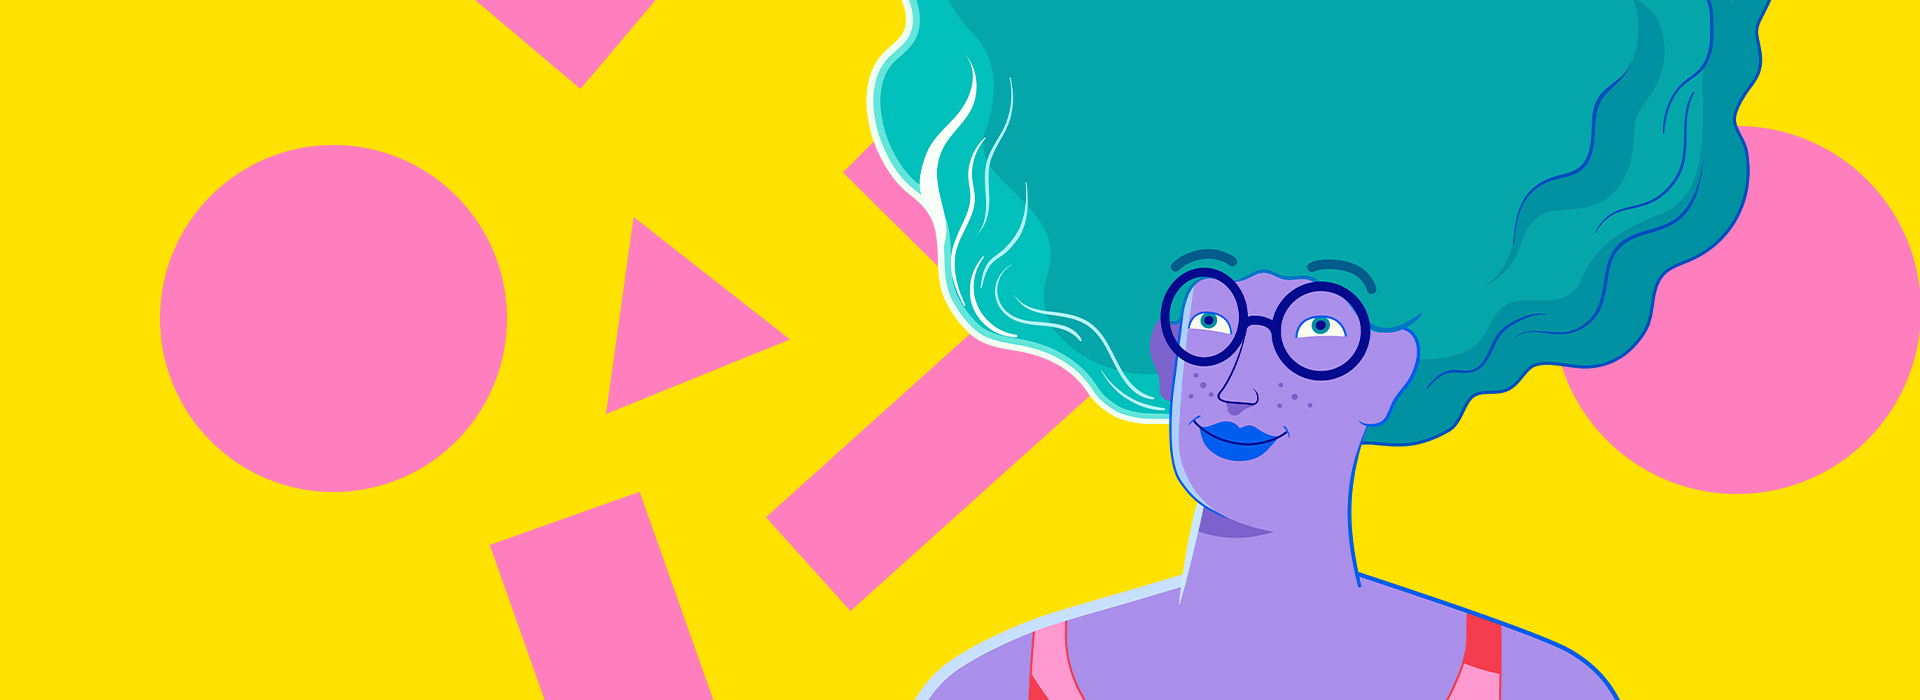 Ilustração de mulher com cabelos verdes, usando óculos. Ao fundo amarelo, formas geométricas em rosa